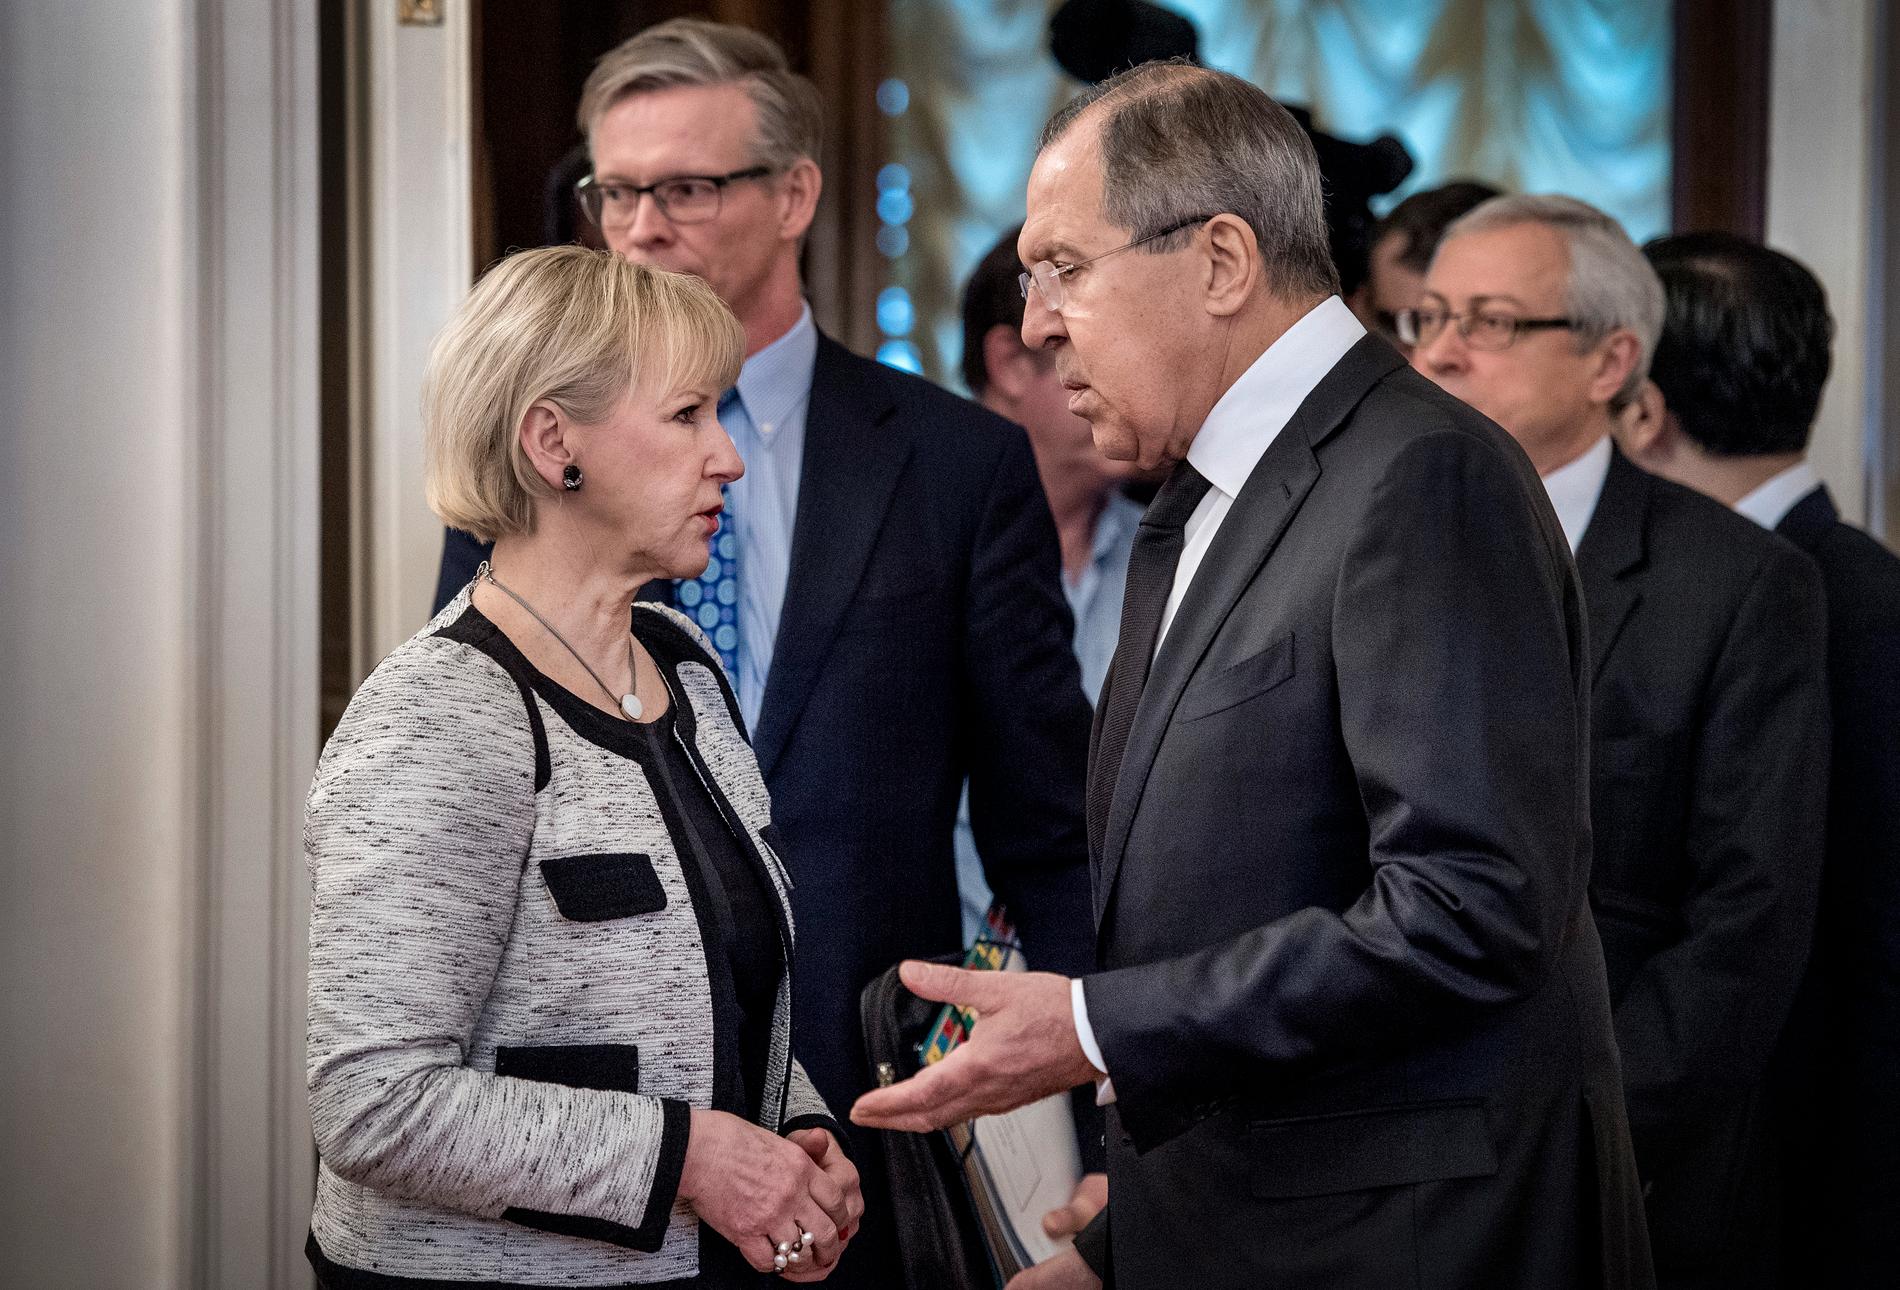 Sveriges utrikesminister Margot Wallström träffar son ryske kollega Sergey Lavrov i Moskva.